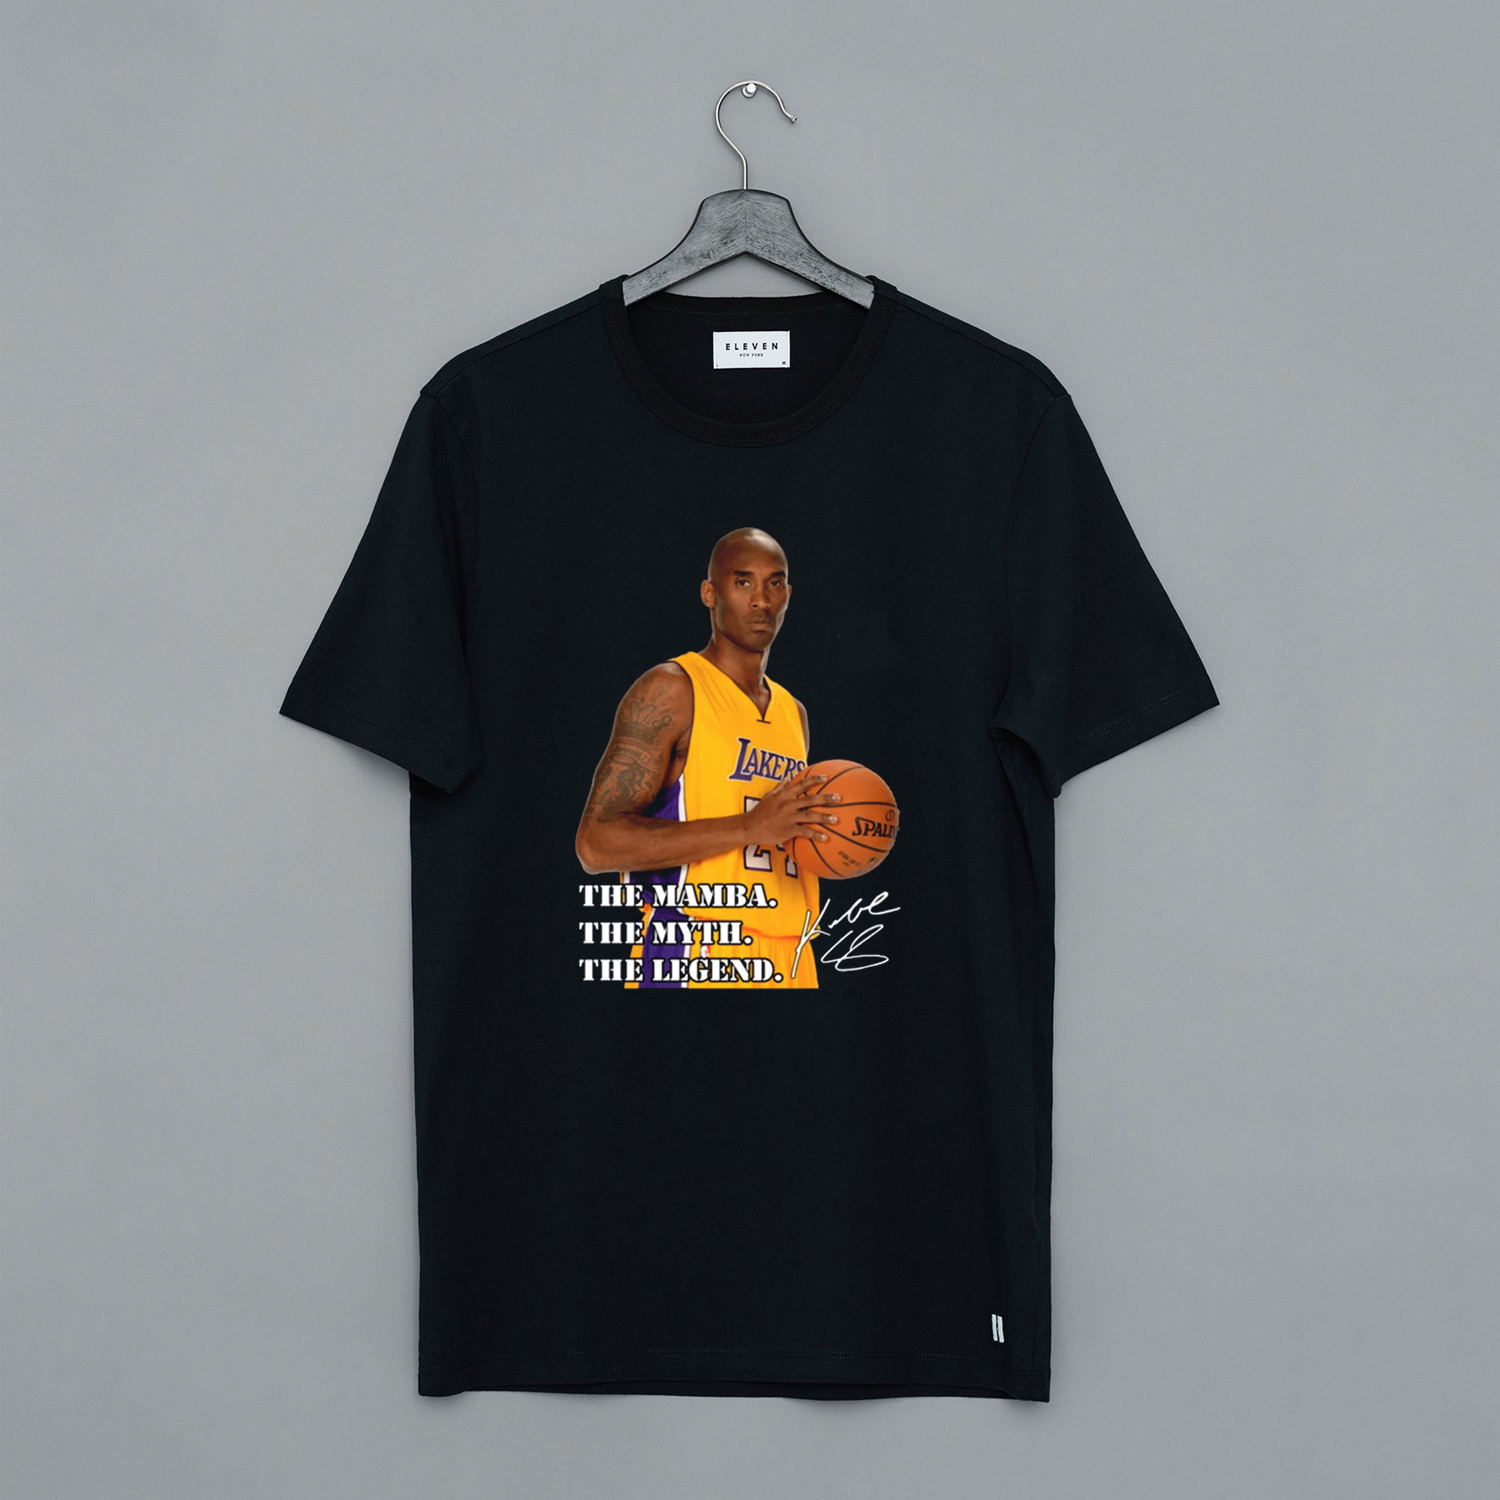 Rip Kobe Bryant T Shirt KM